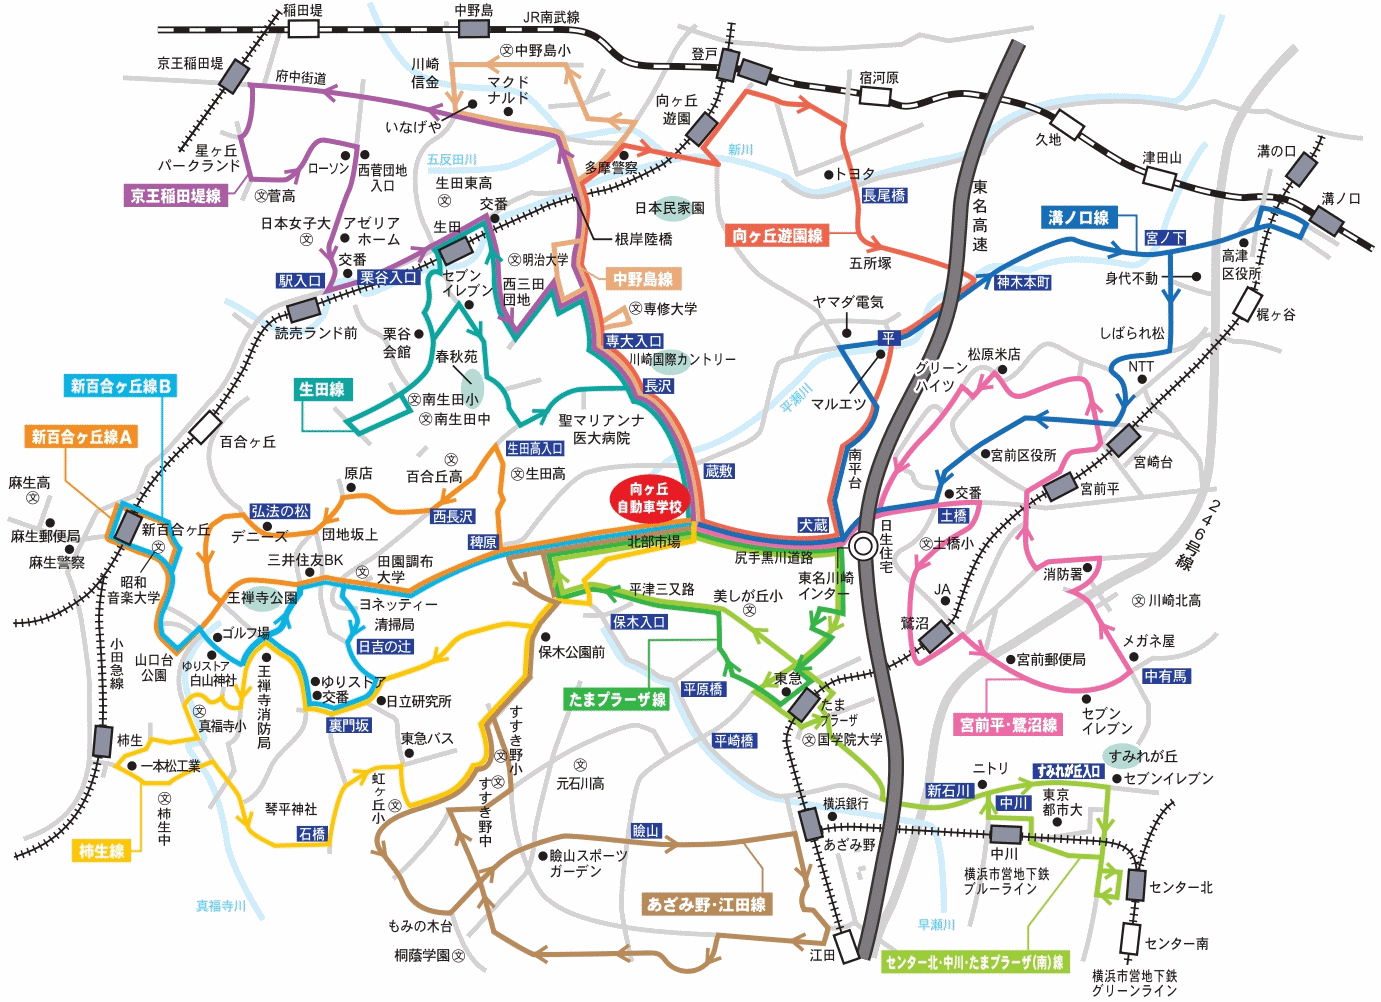 向ヶ丘自動車学校 地図